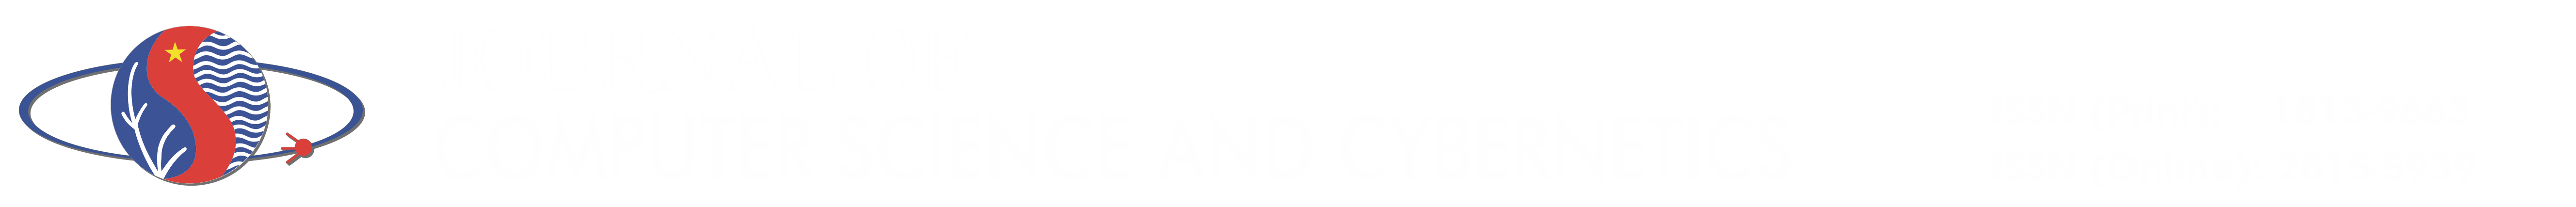 JCC Logo